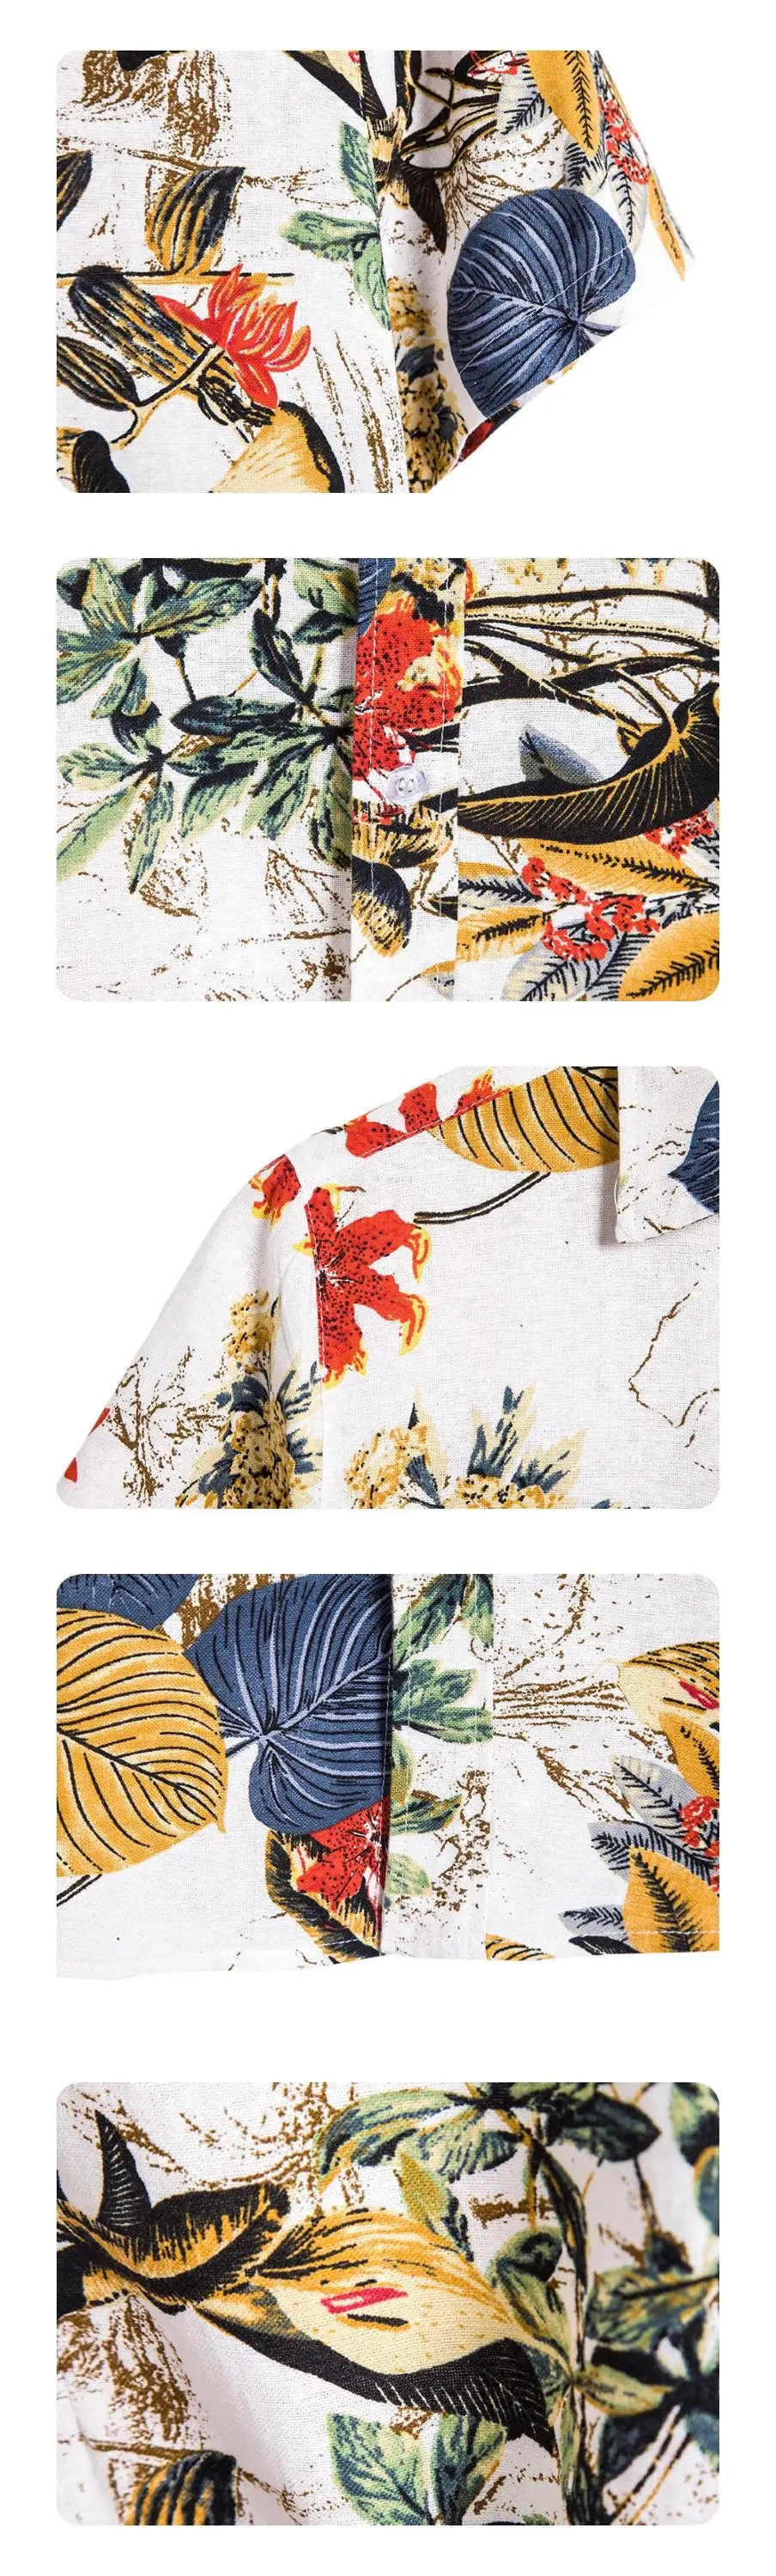 Plus Größe 5XL Leinen Chinesischen Stil Muster Mann Sommer Hawaii Floral Button Up Tops Herren Aloha Shirts 2020